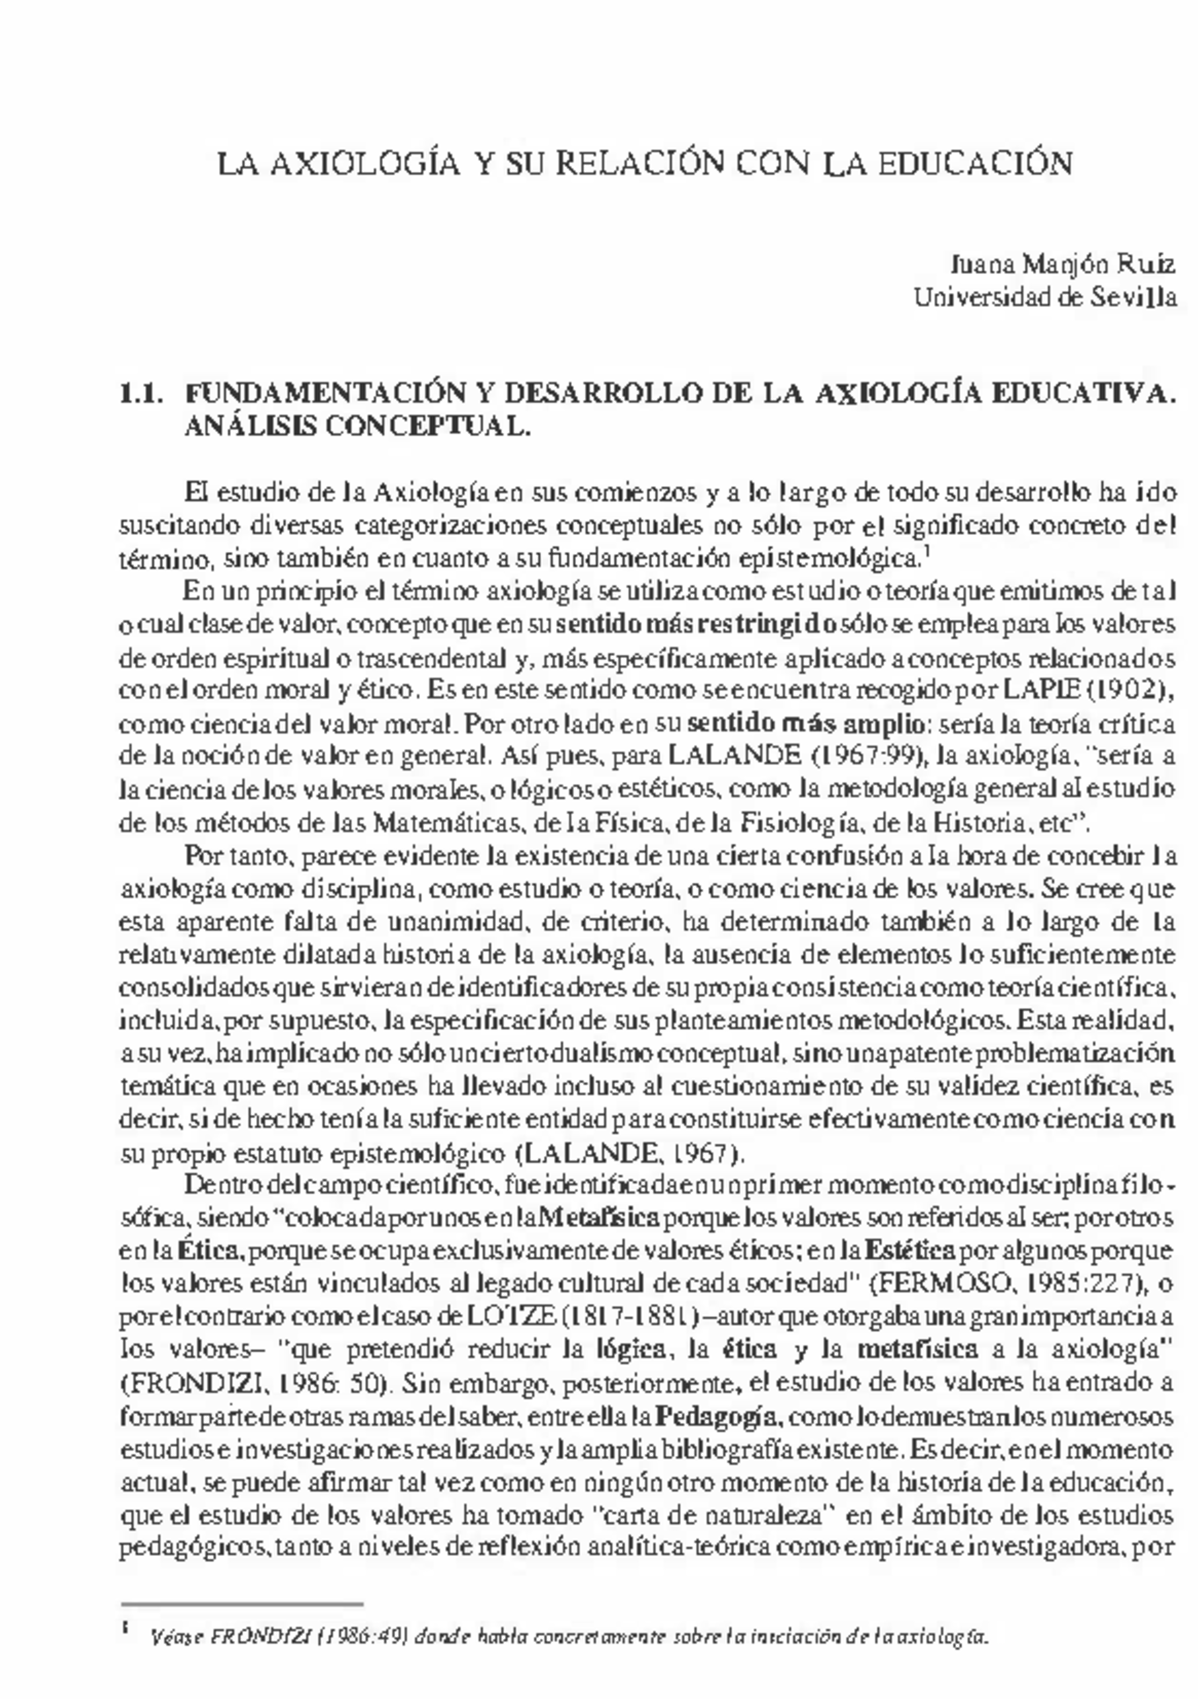 Unidad 3 Lectura Manjón Ruiz 2009 Axiológica Y Relación Con Educación La AxiologÍa Y Su 4267